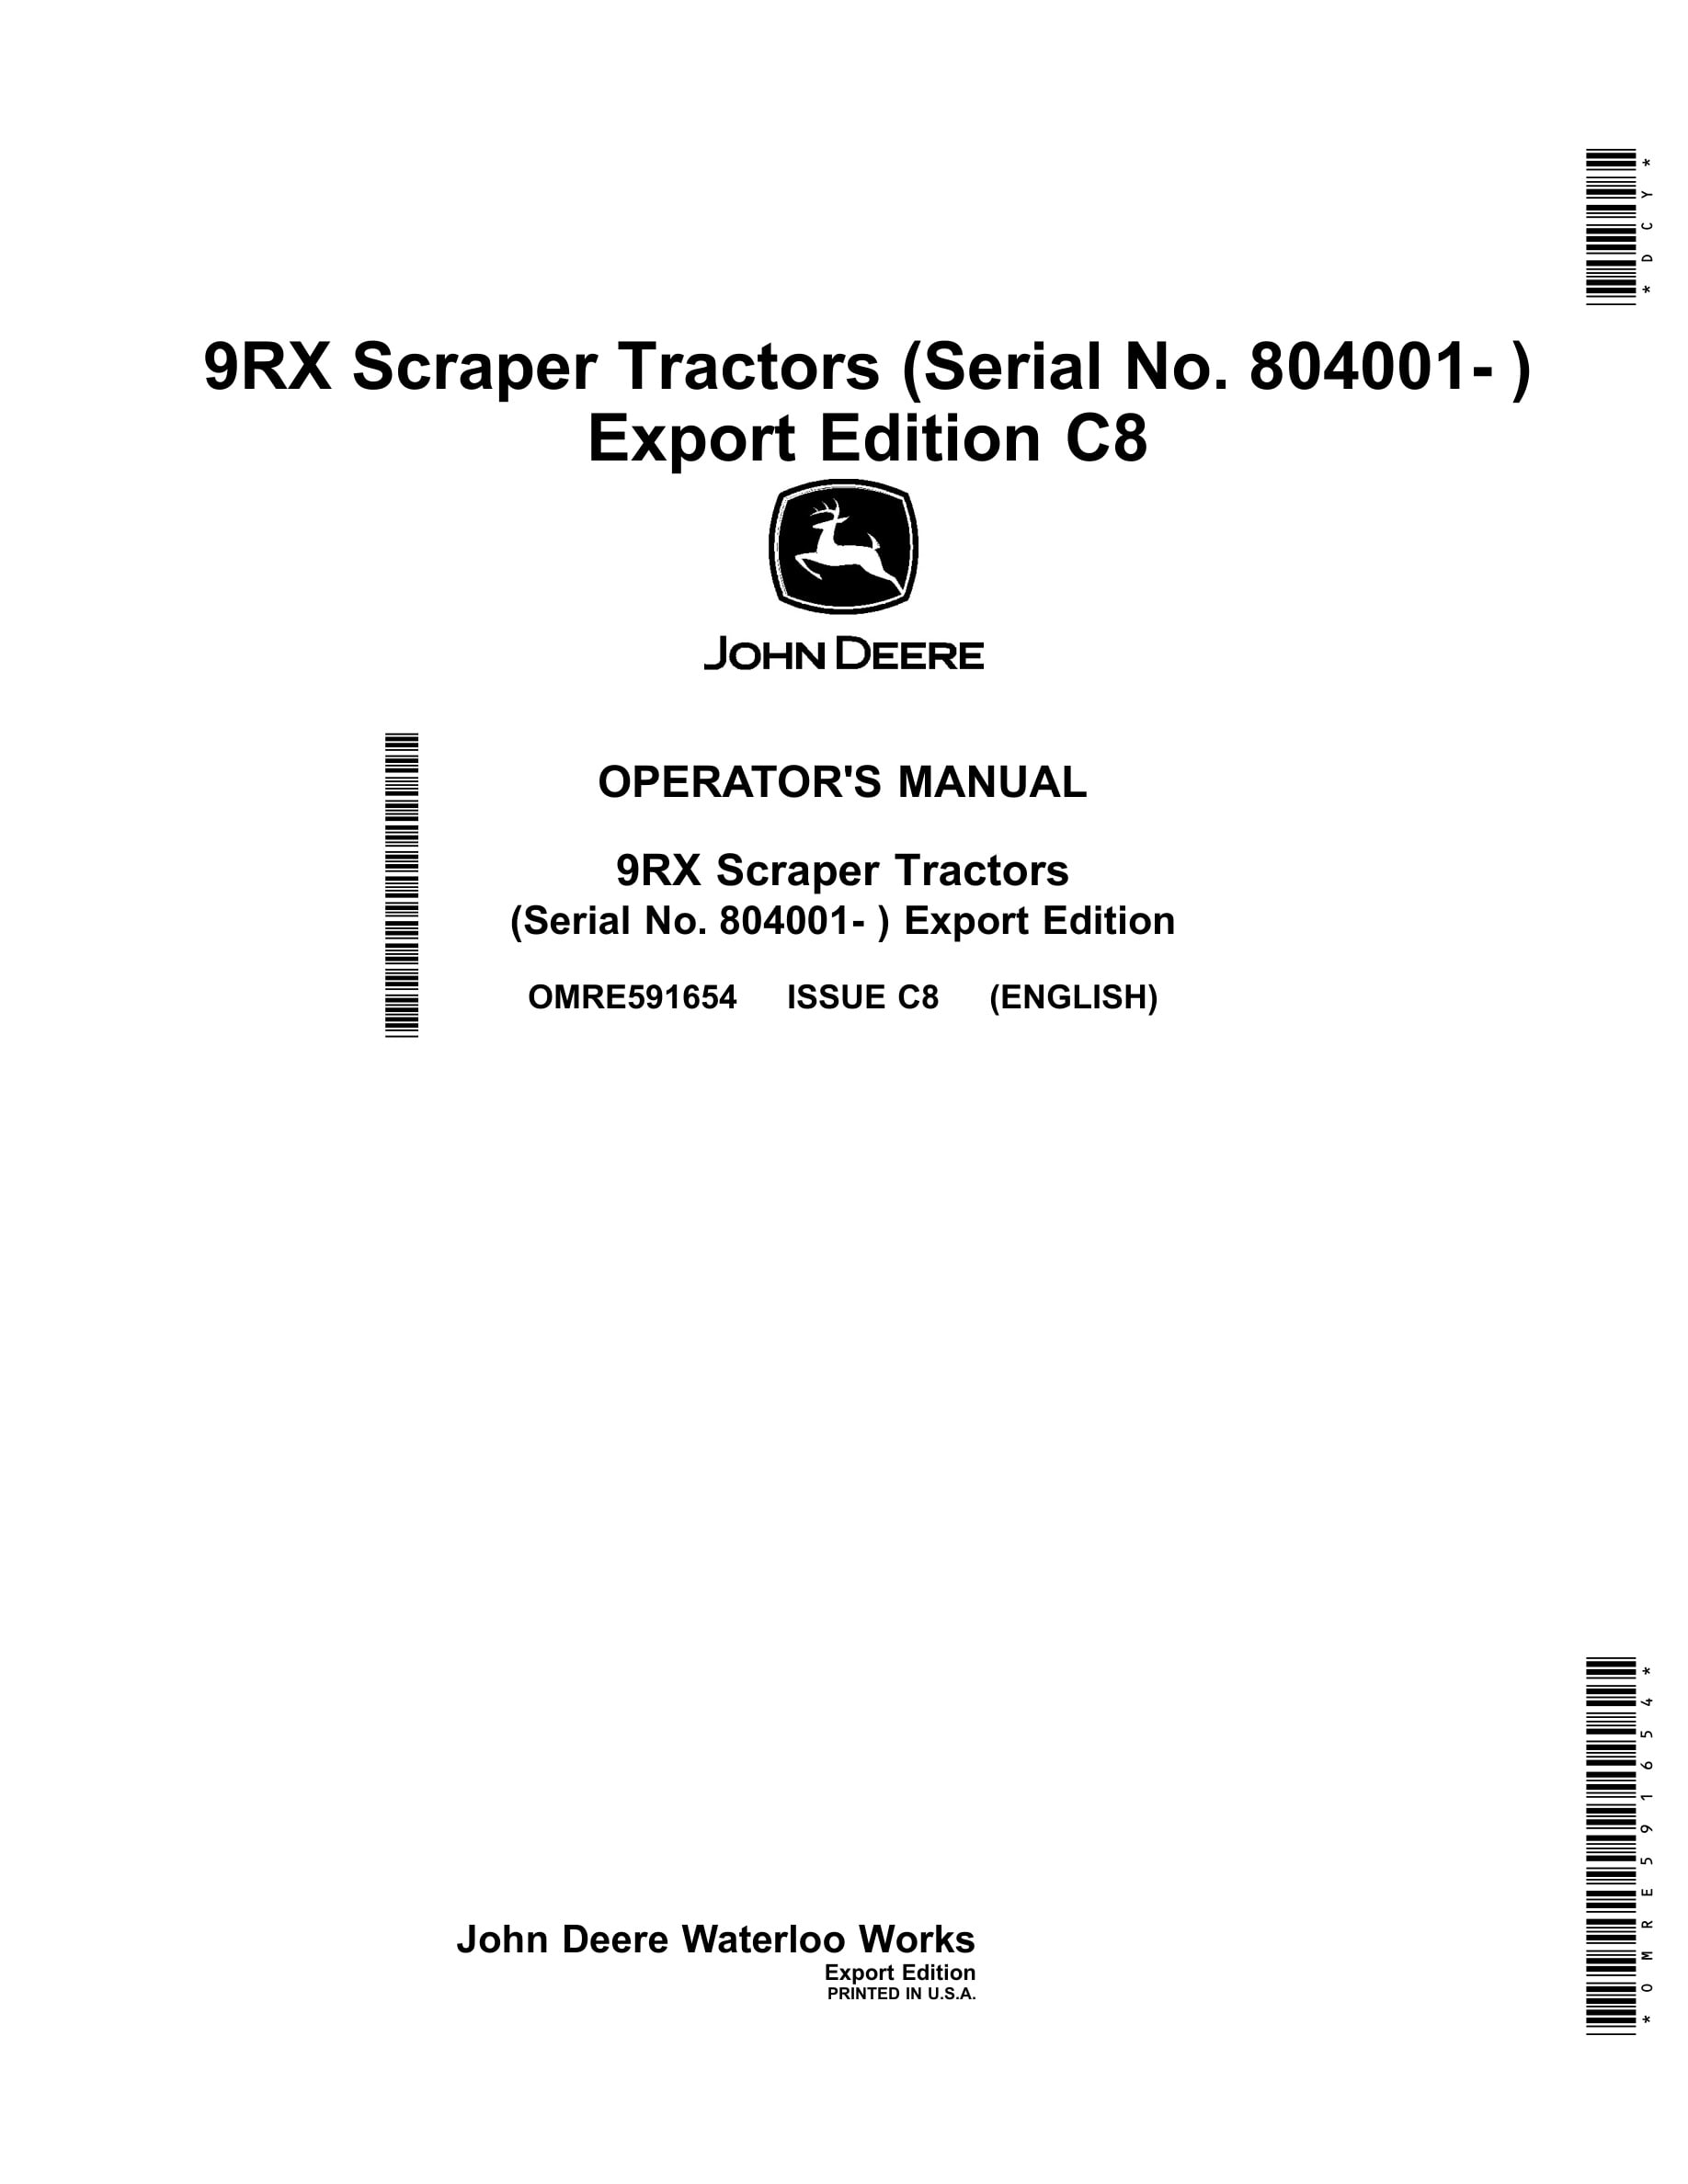 John Deere 9rx Scraper Tractors Operator Manuals OMRE591654-1